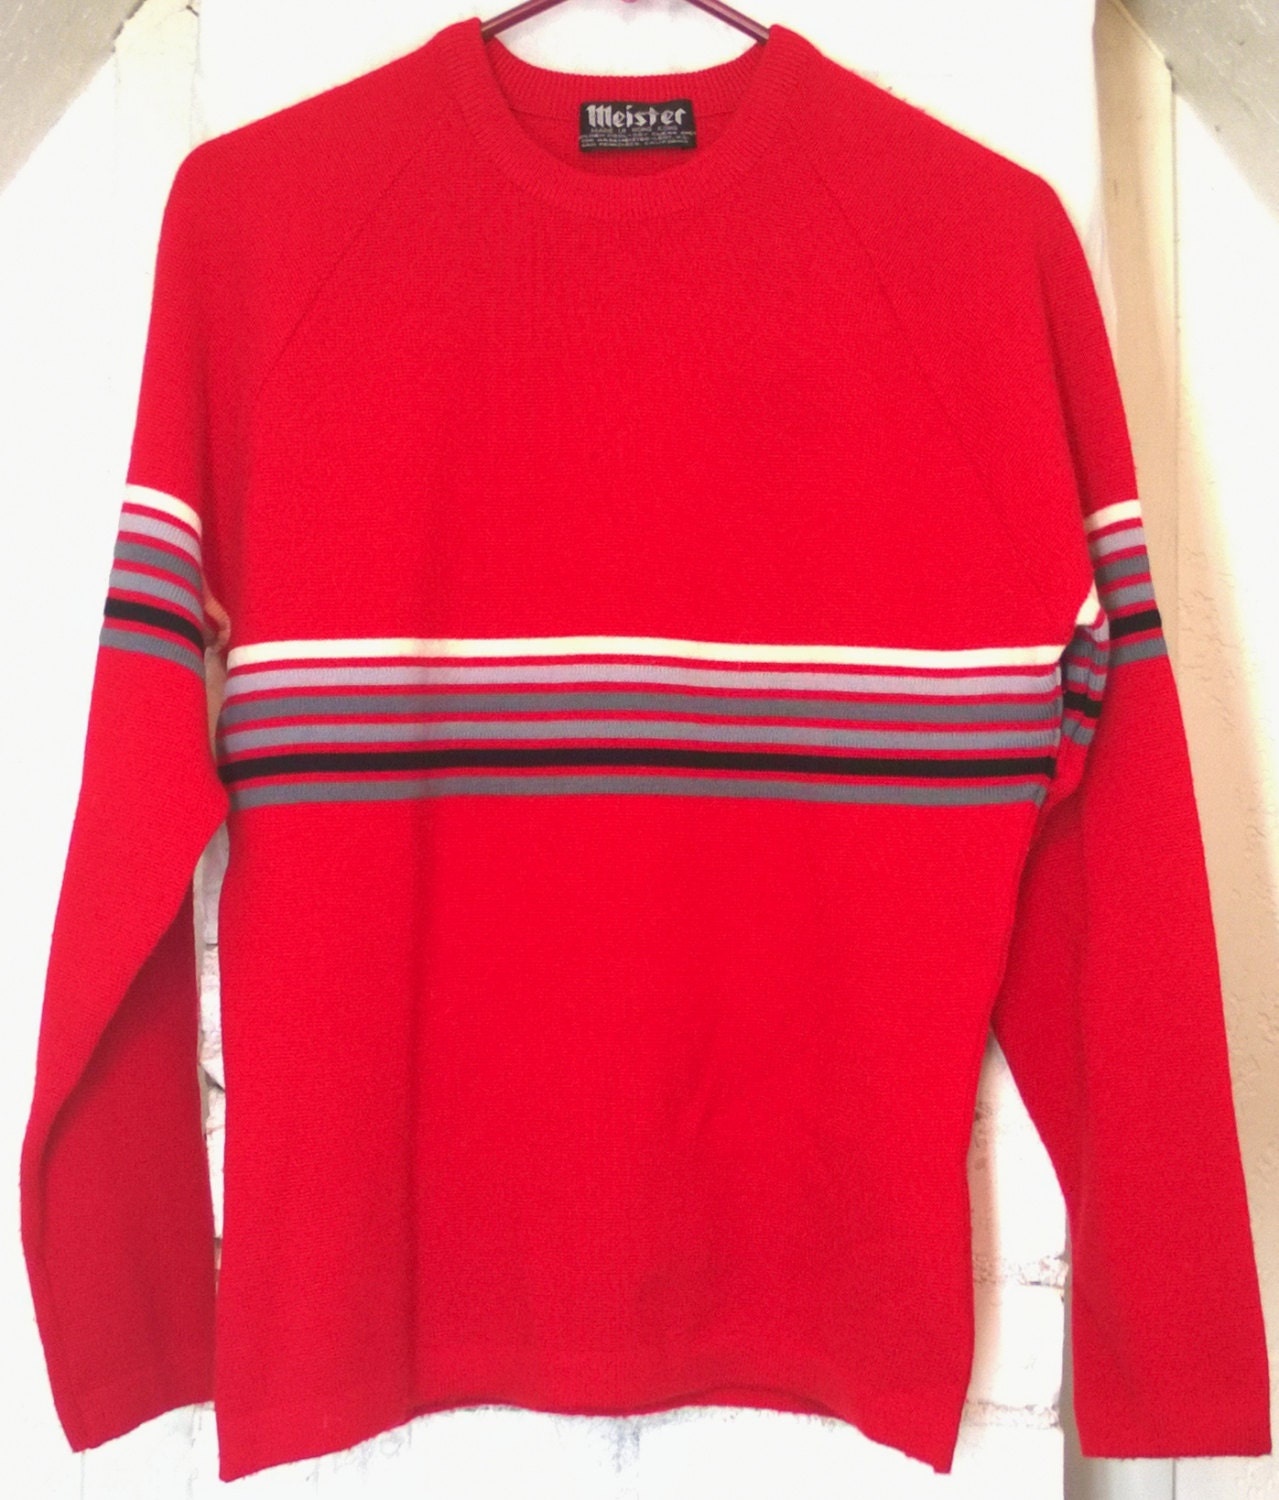 Vintage 1970s Sweater by Meister Ski Wear 100% New Wool